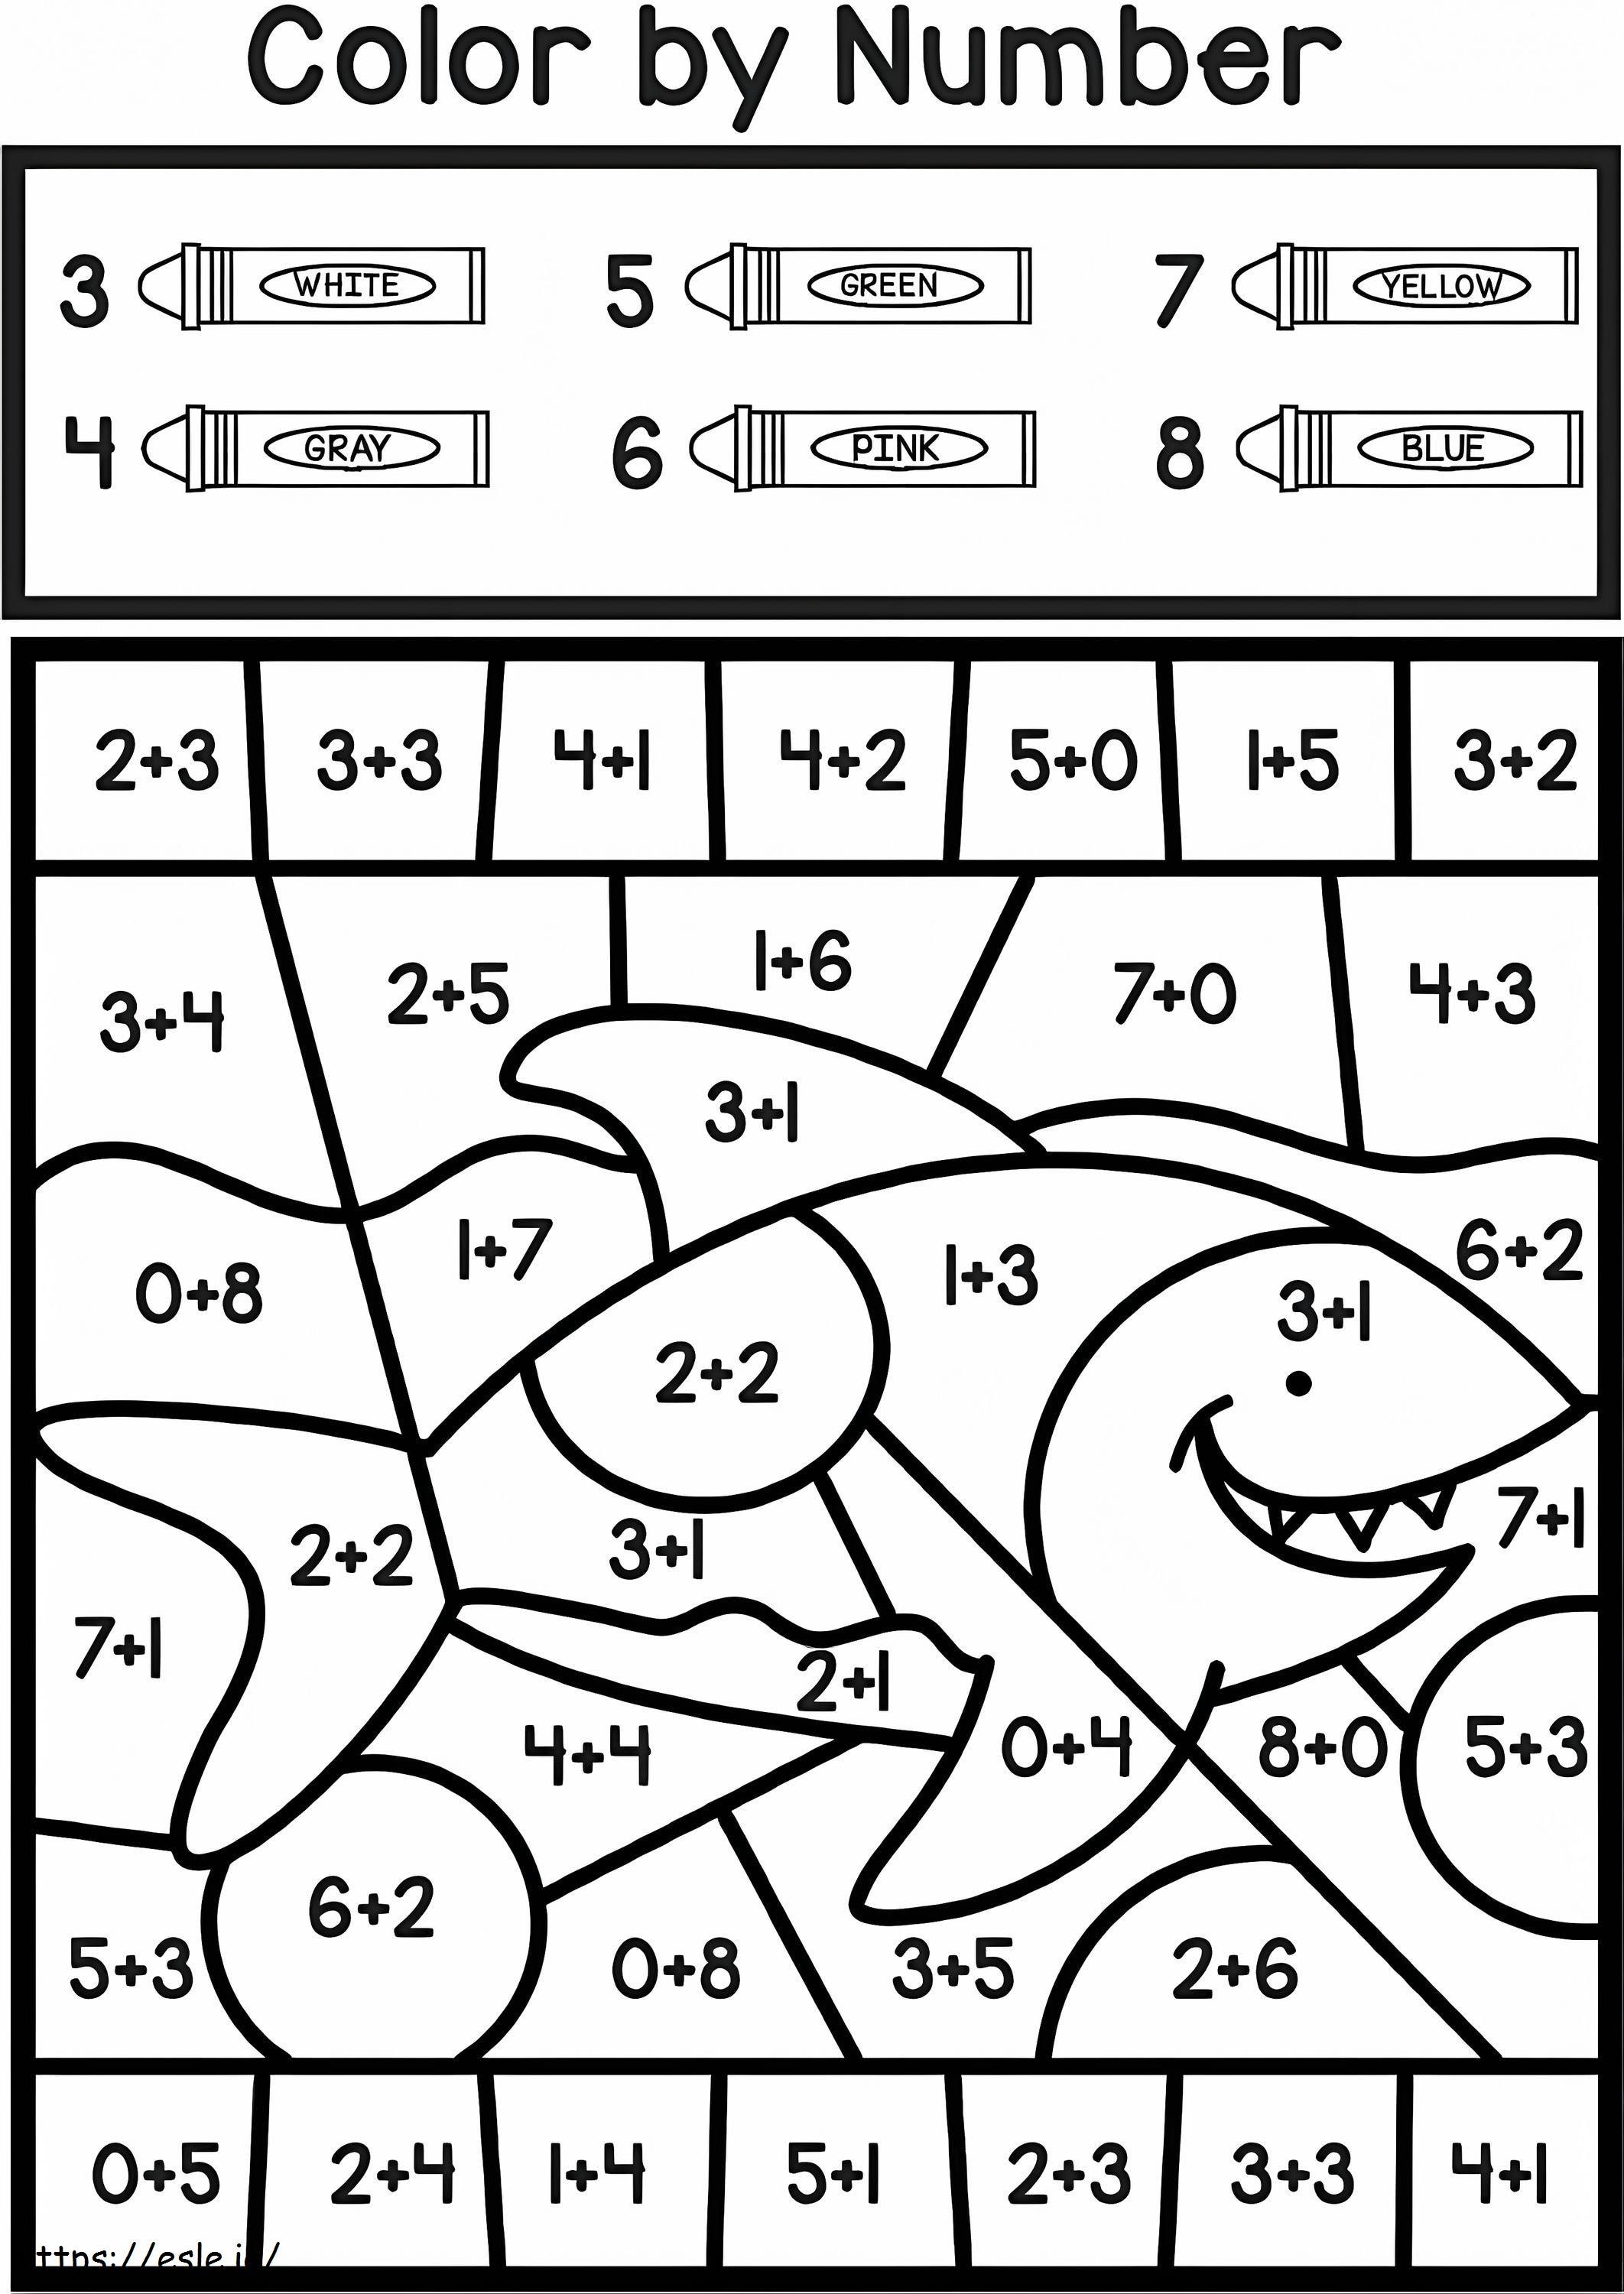 Colore dello squalo per aggiunta di numeri da colorare